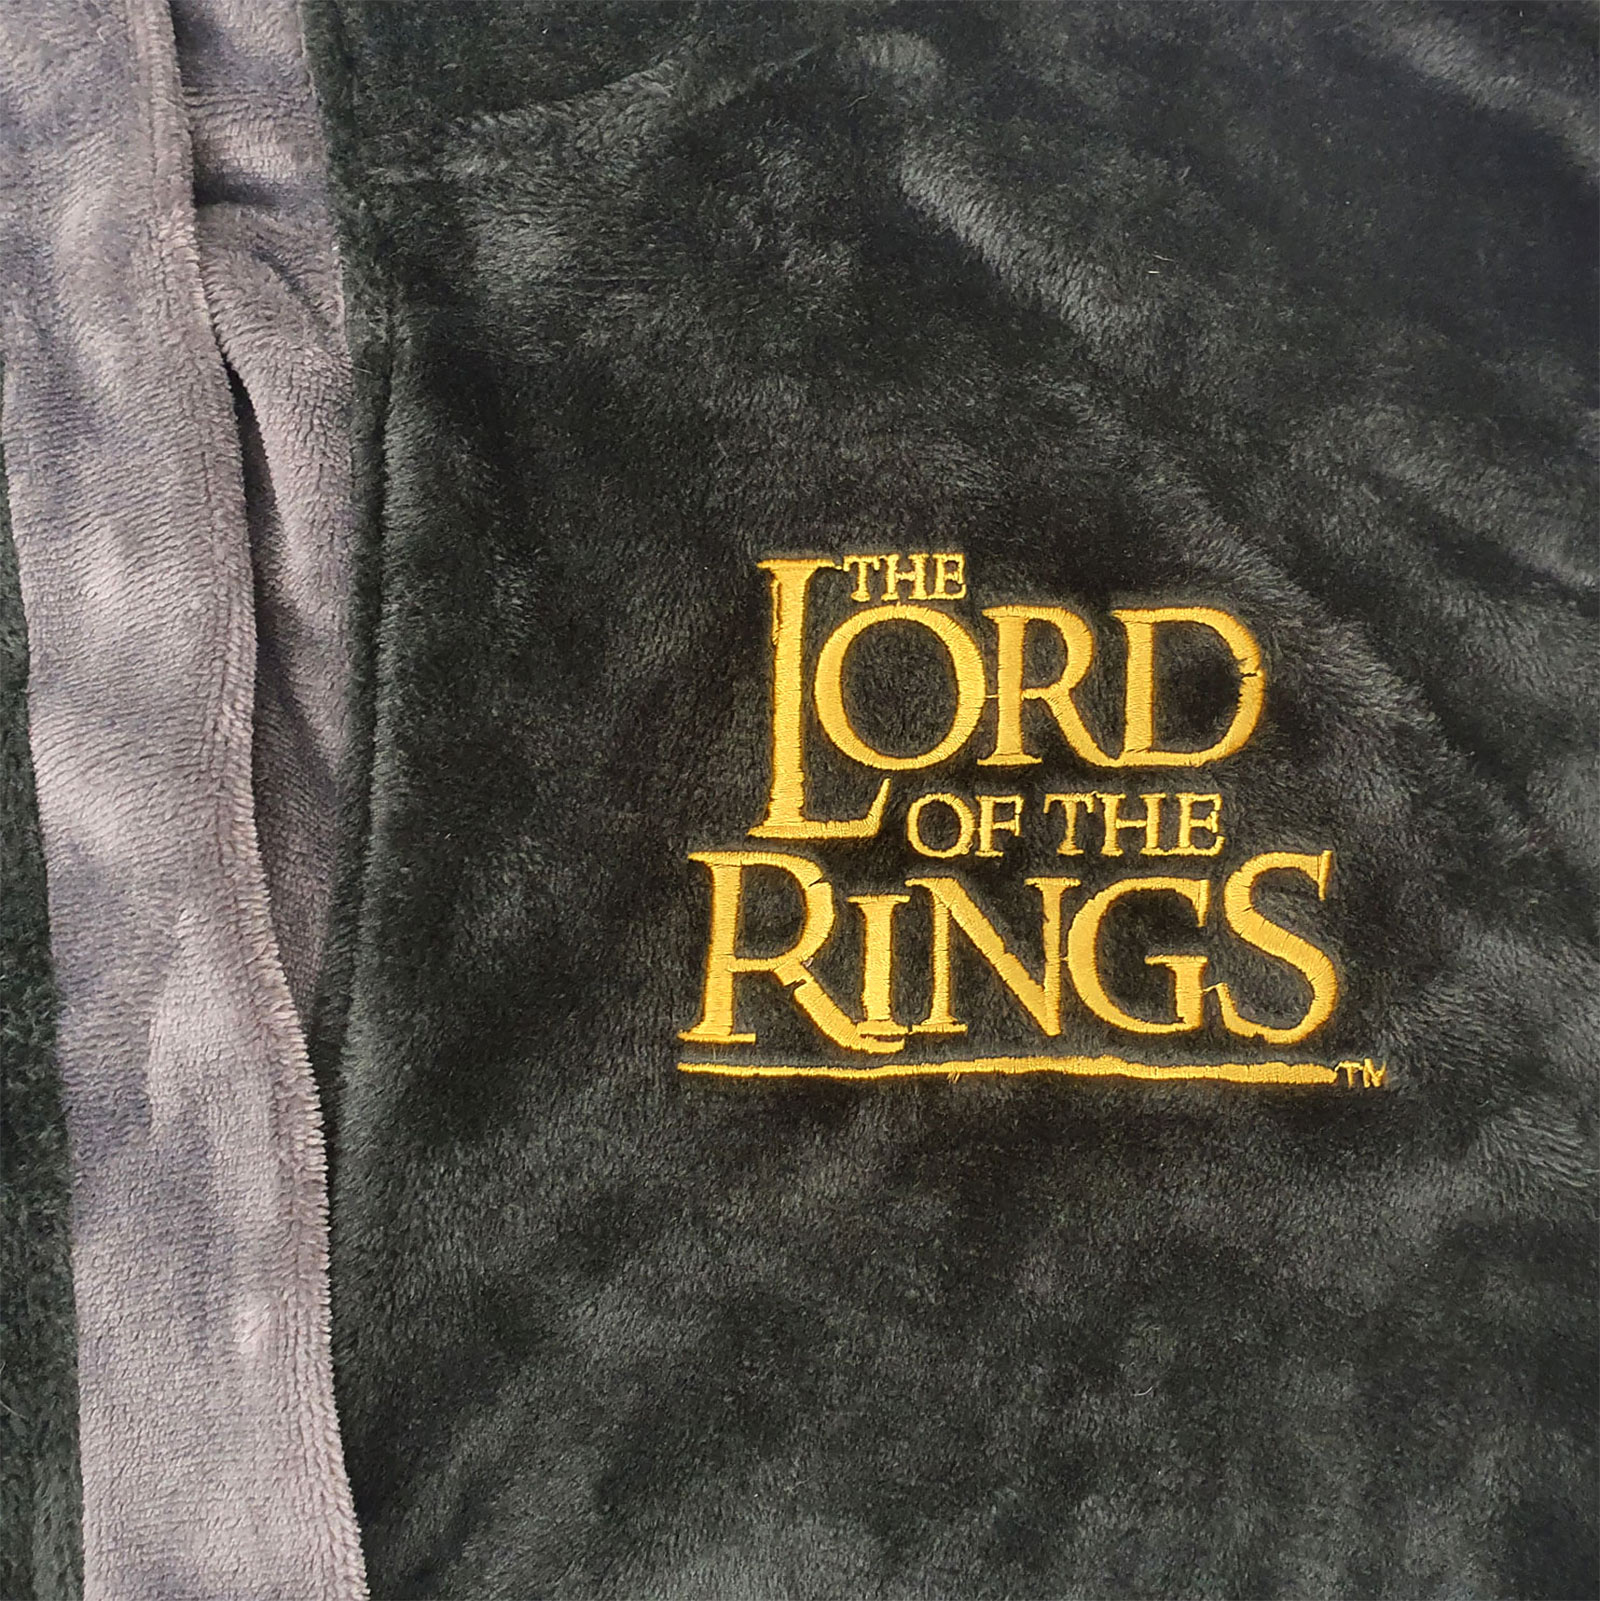 Gemeinsam für Gondor Bademantel - Herr der Ringe